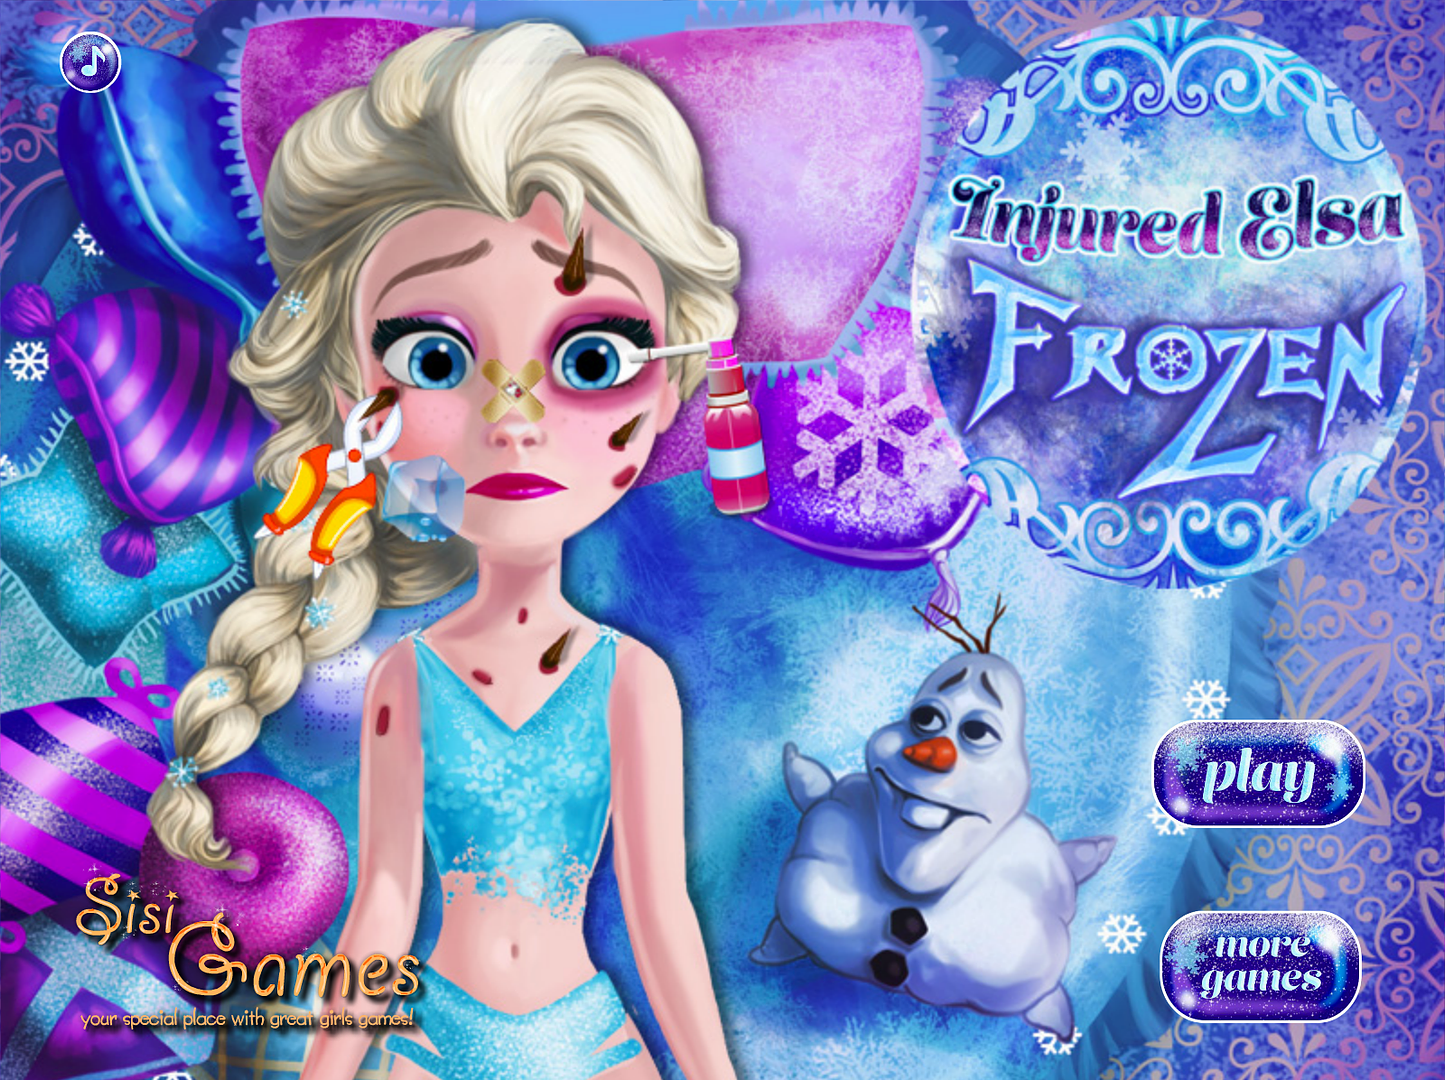 Injured Elsa and other horrible unlicensed Frozen games for kids